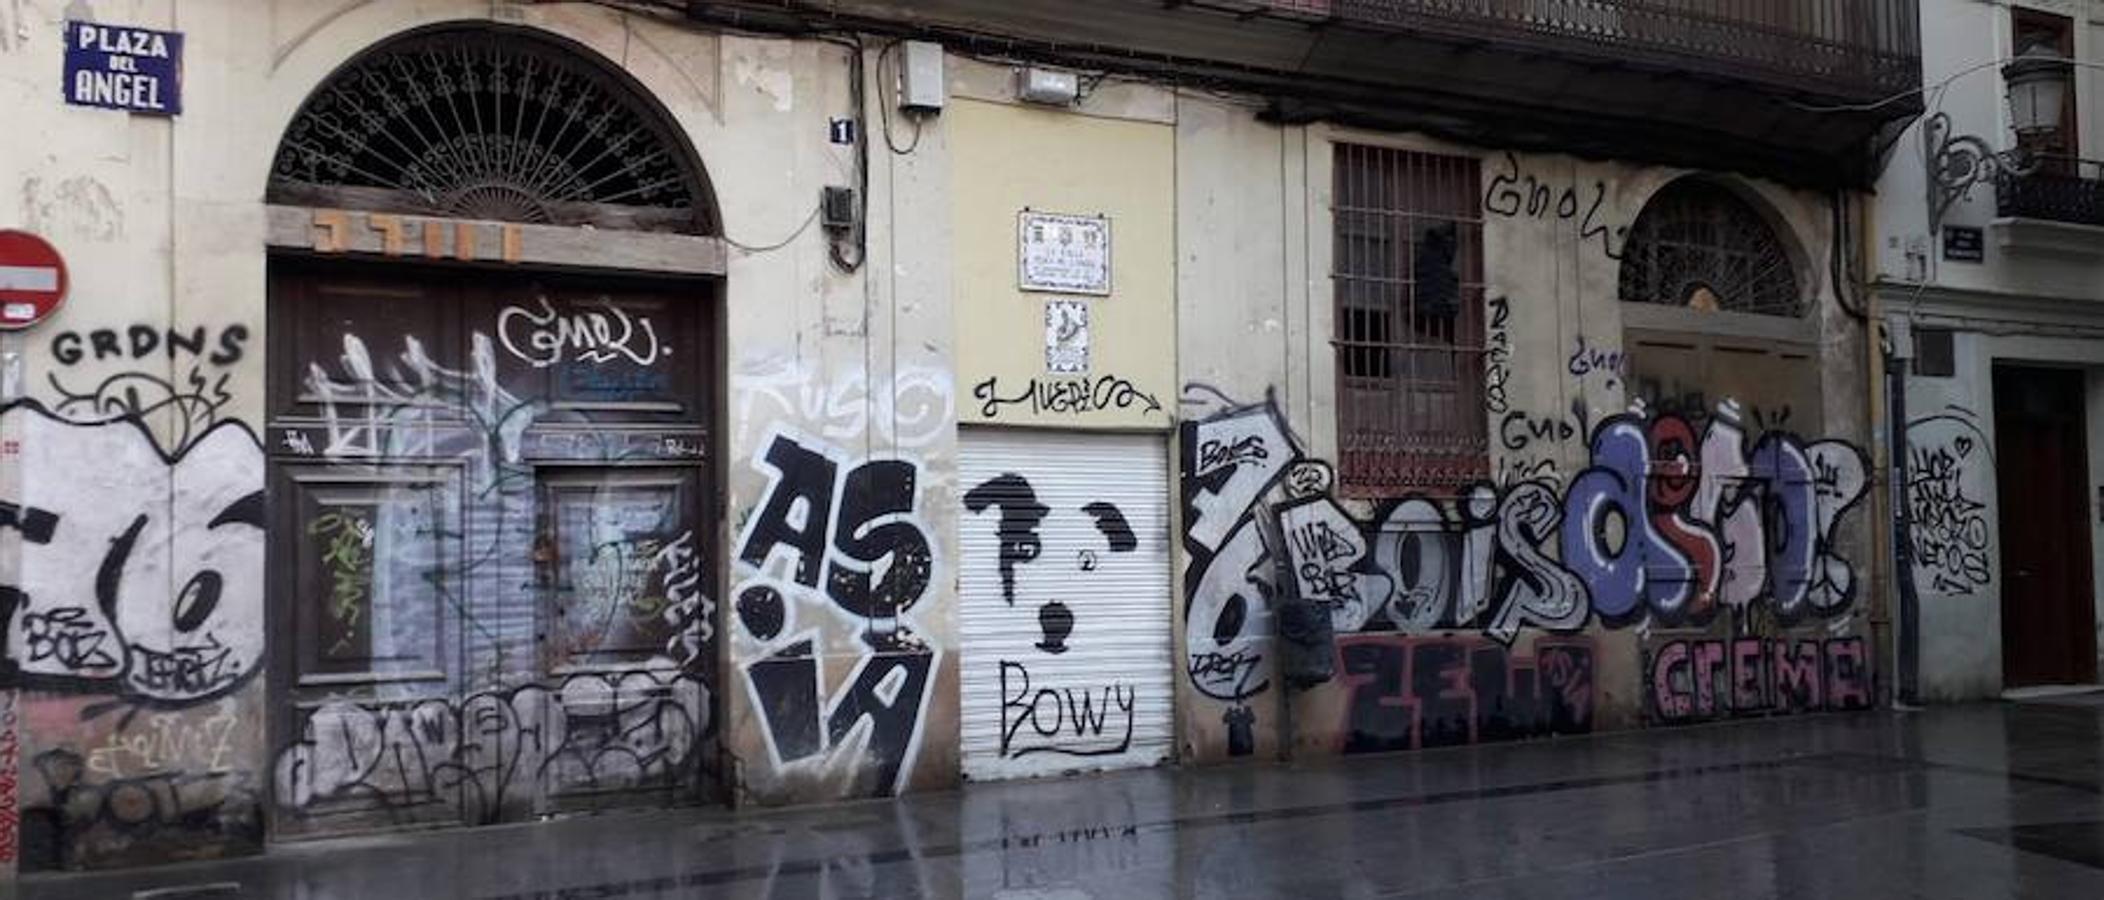 El Ayuntamiento de Valencia destinará 36.000 euros a la limpieza de pintadas en Ciutat Vella, aunque mantendrá las pintadas artísticas y figurativas o las que tienen un valor simbólico. Este plan incrementará la superfície limpiada en 10.000 metros cuadrados de los 8.183 del año pasado.